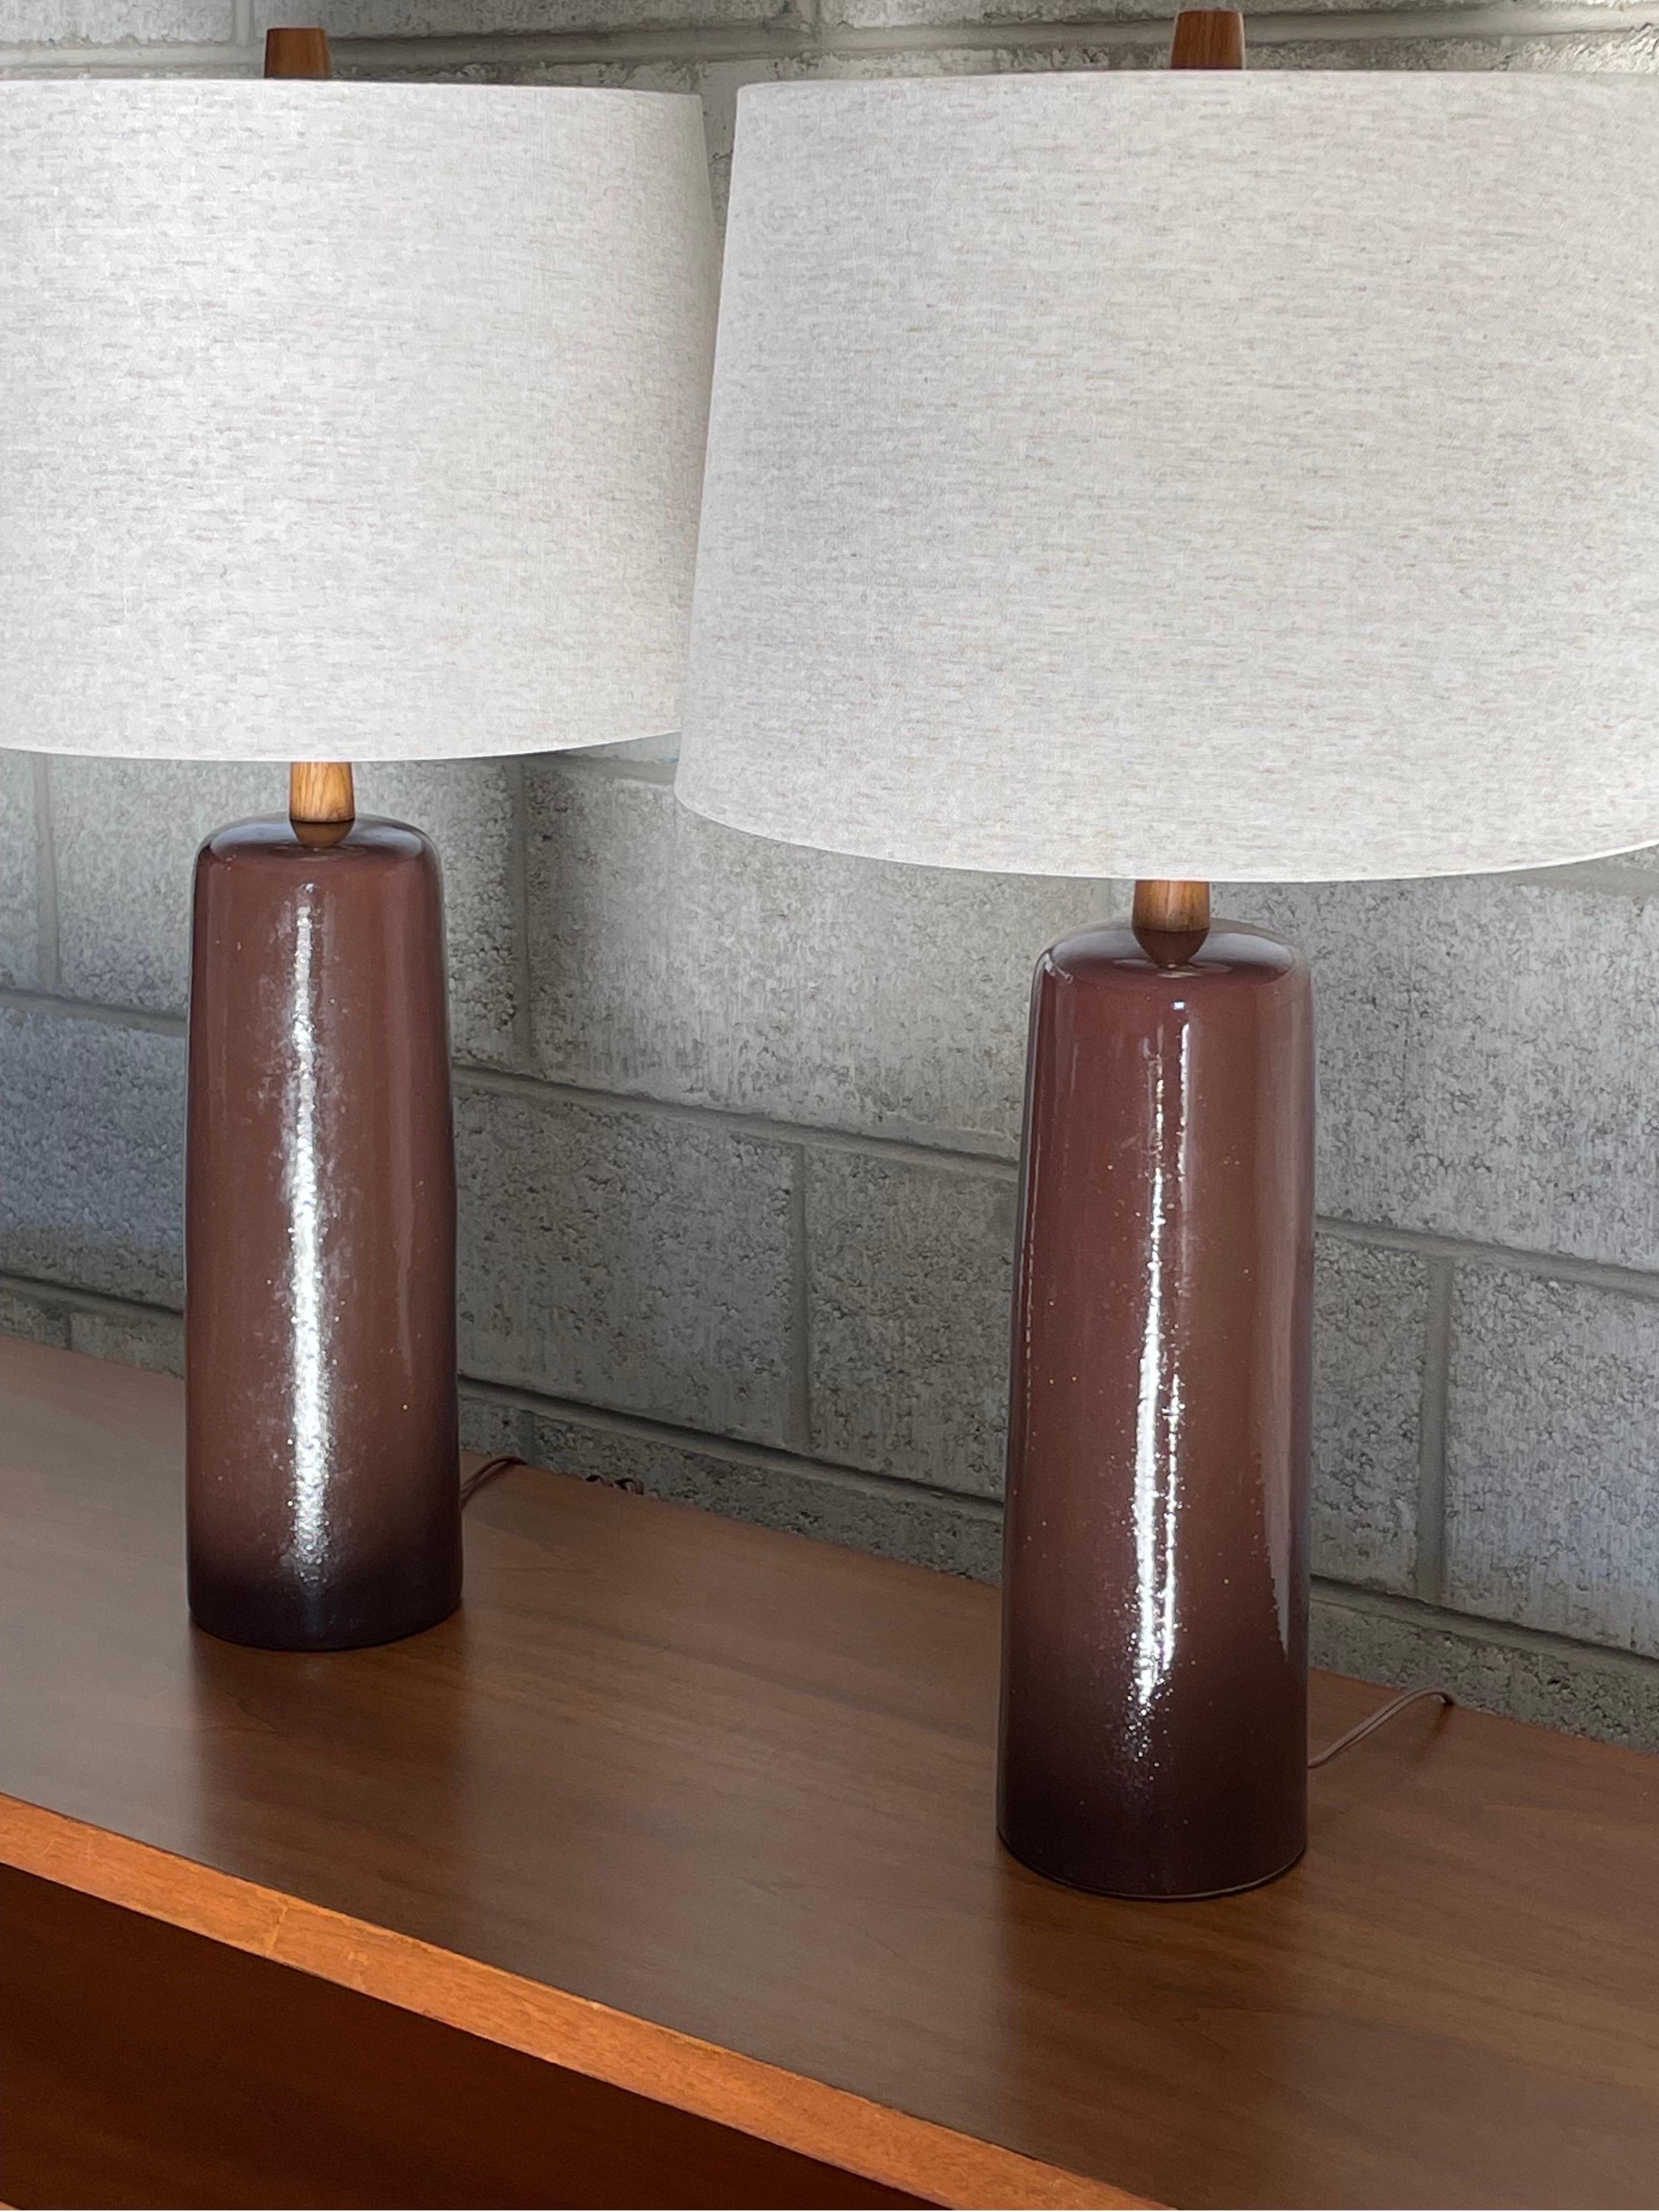 Lampes de table conçues par le duo de céramistes Jane et Gordon Martz pour Marshall Studios. Couleur un brun avec quelques nuances de prune.

Dimensions
Dans l'ensemble ;
27.25